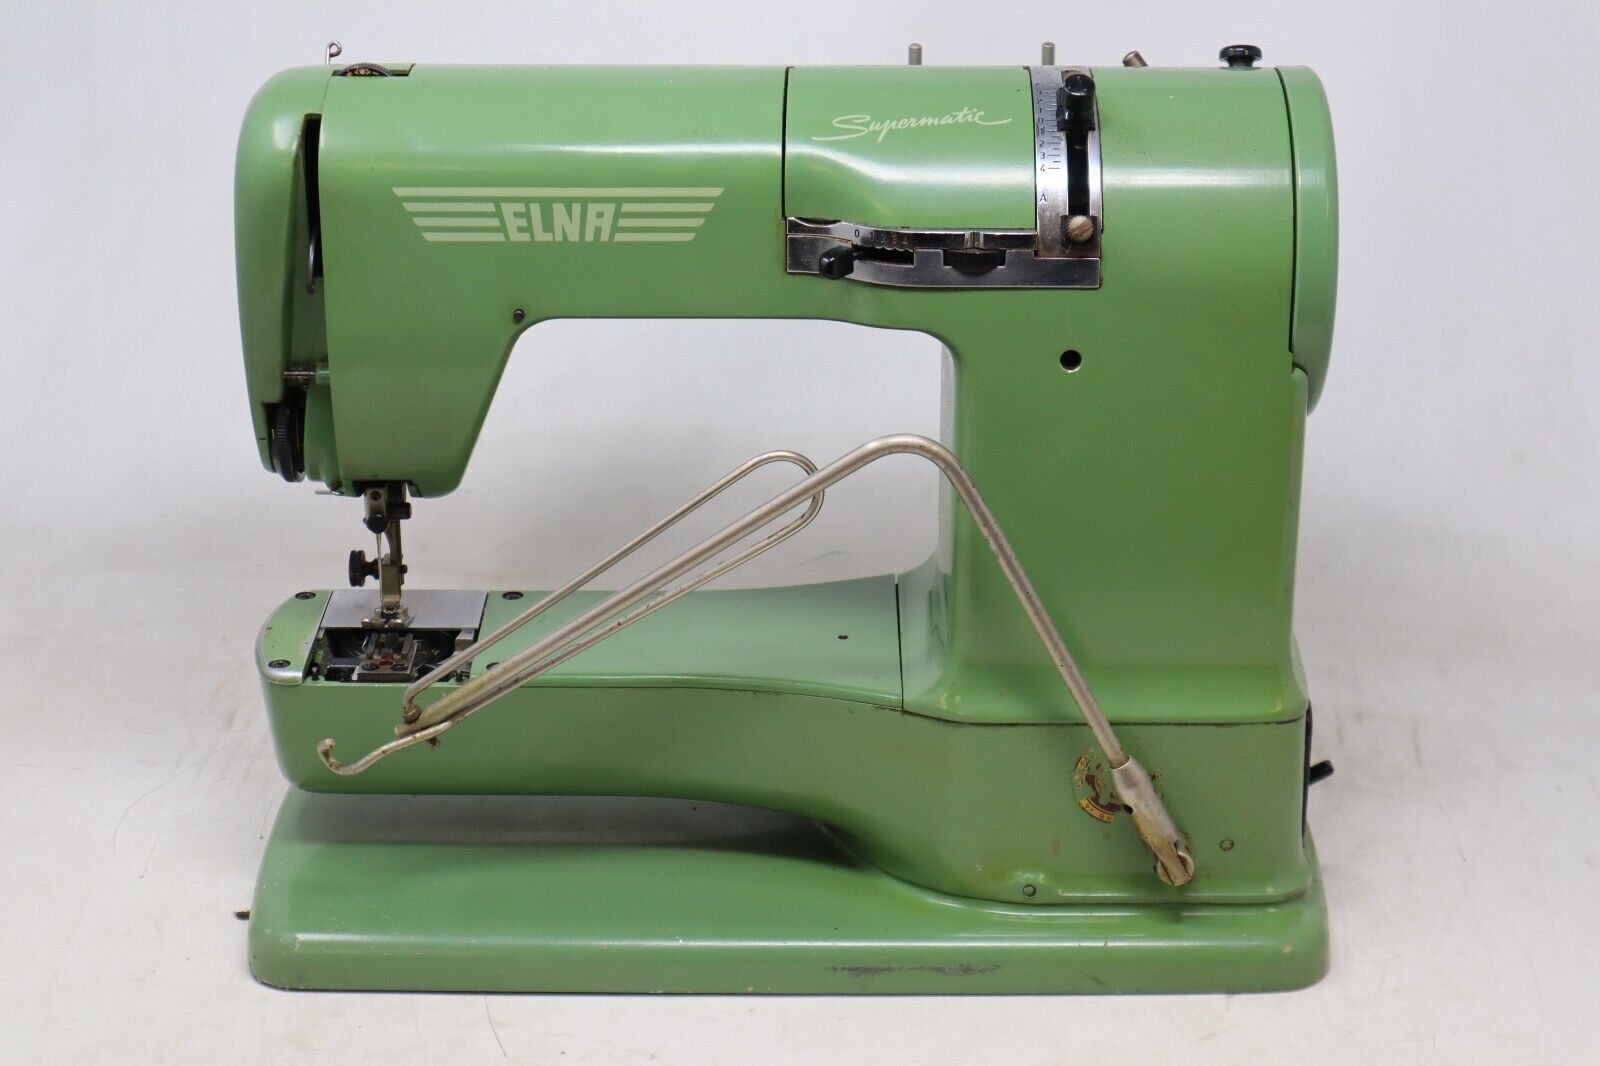 ELNA Supermatic Sewing Machine | Vintage | Switzerland | Geneva